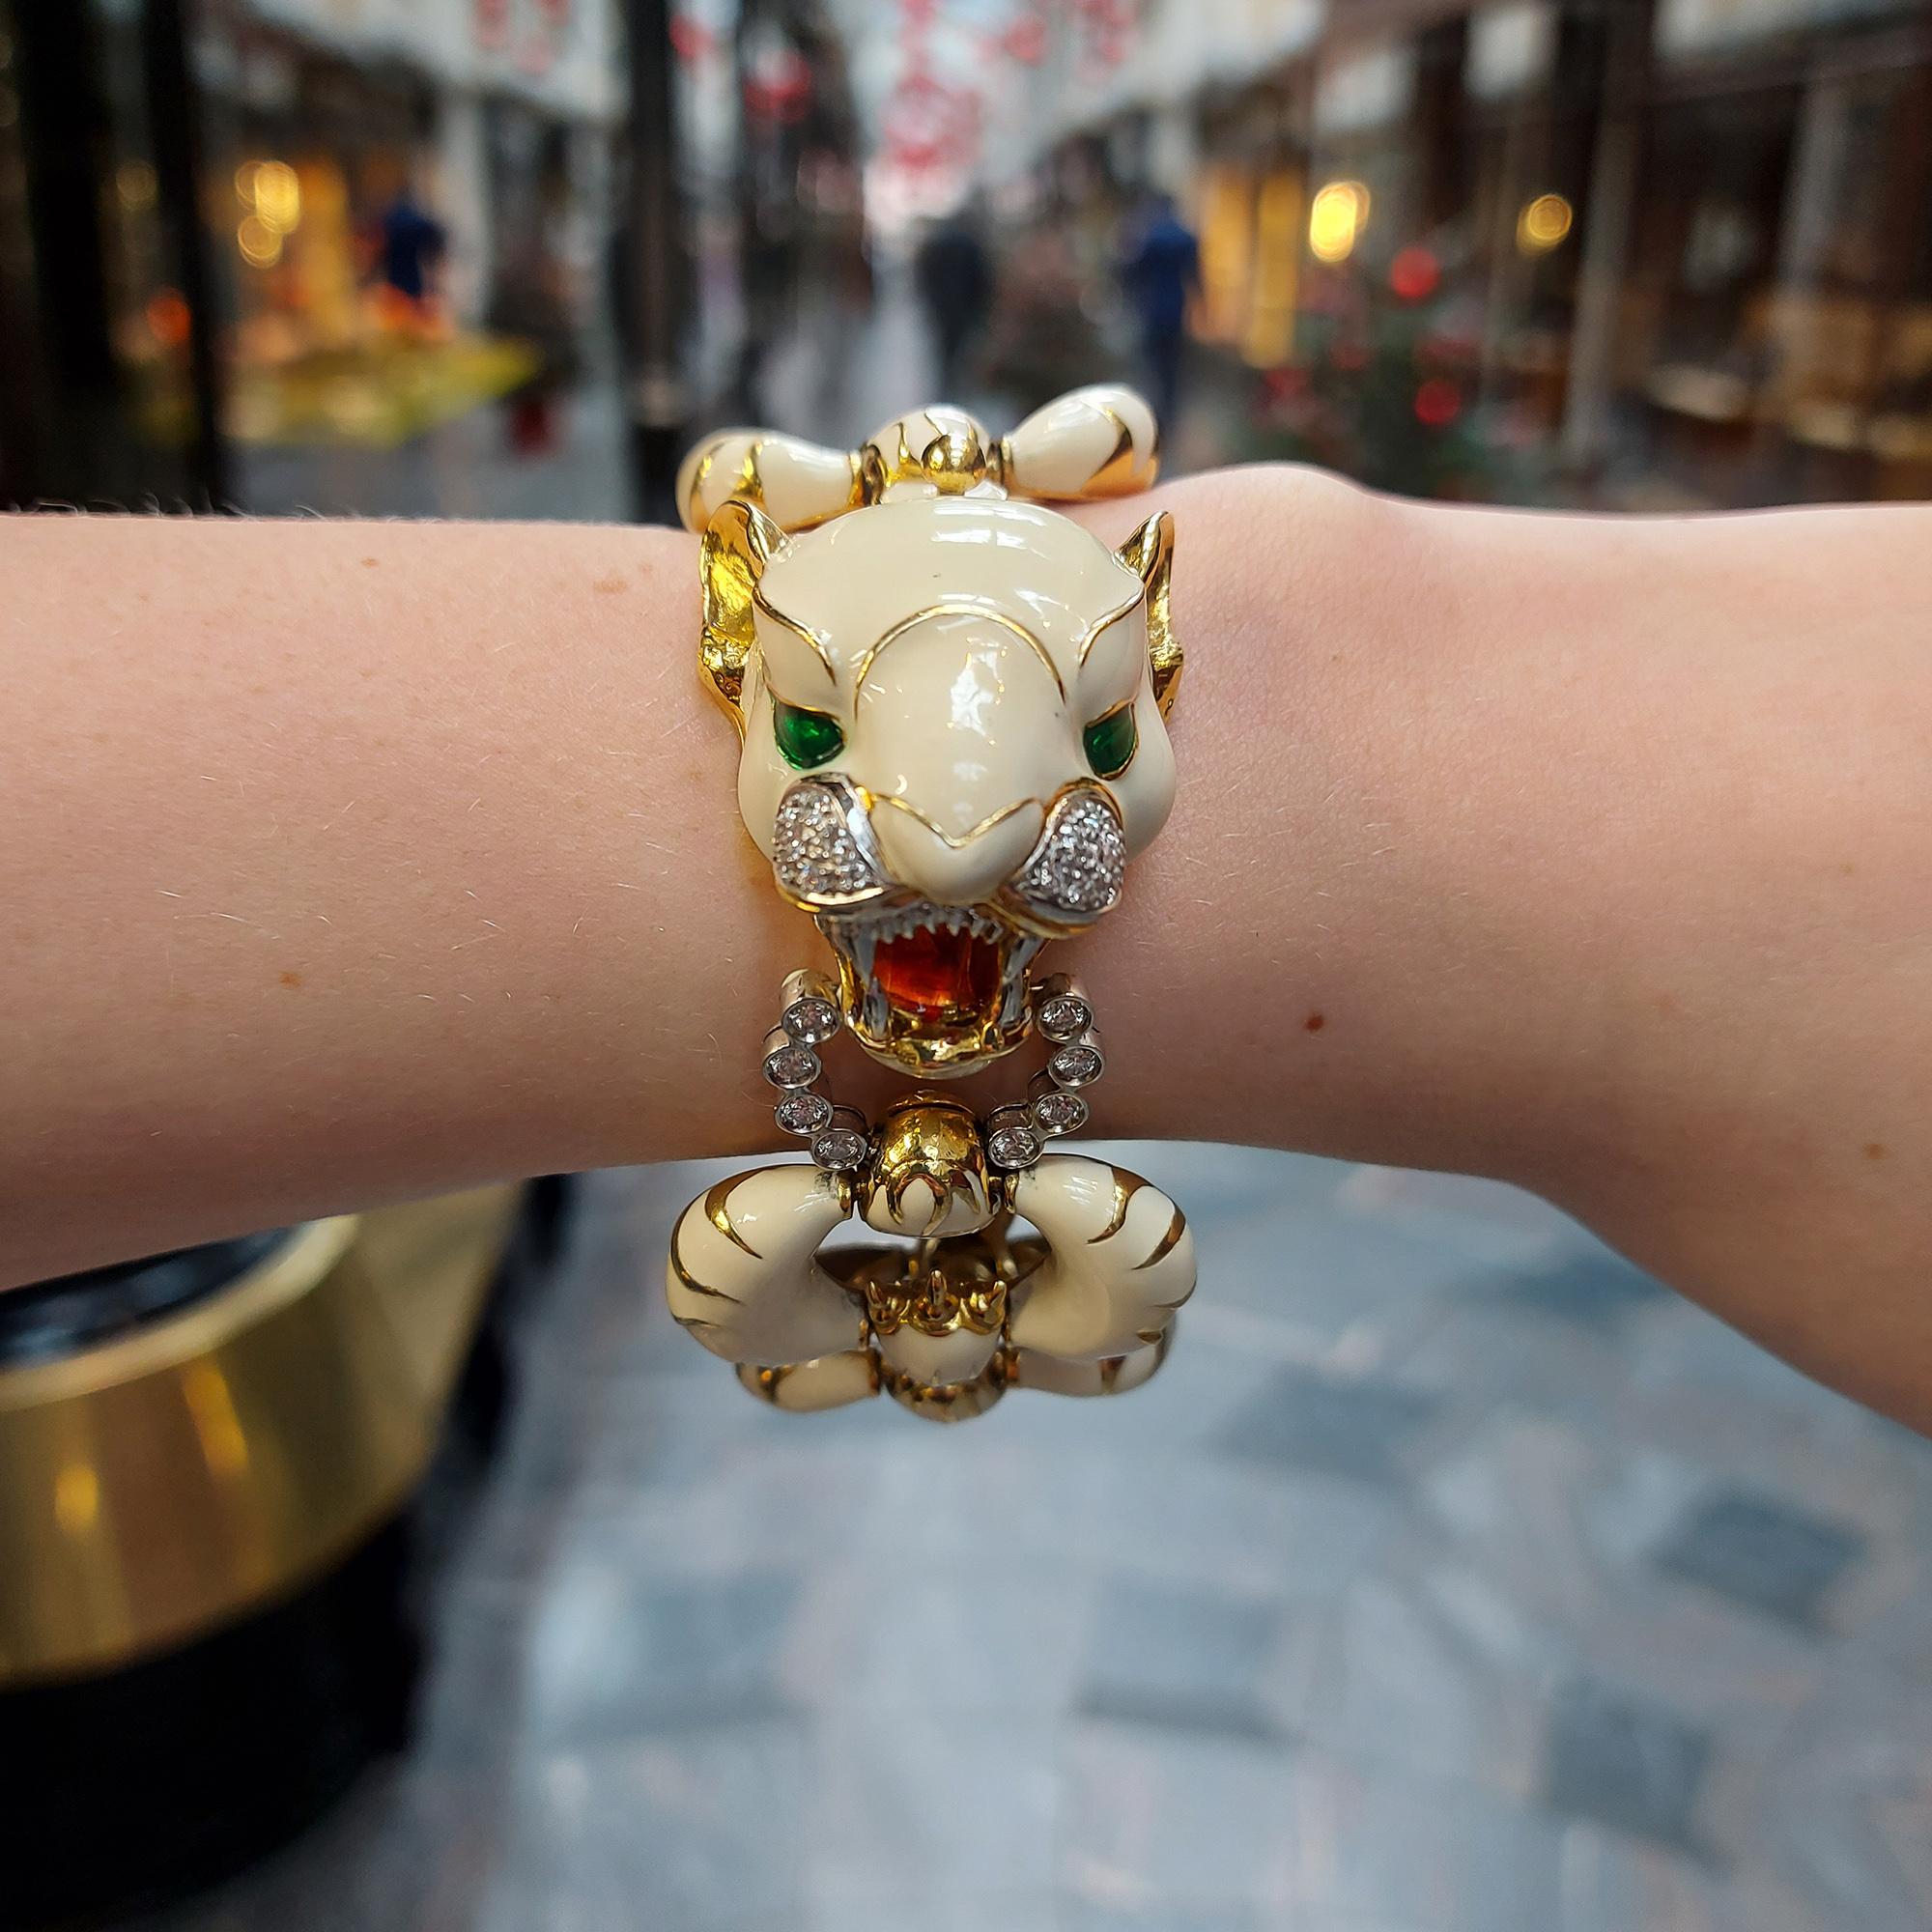 Ein wunderschönes, einzigartiges Armband aus Emaille und Diamanten mit dem sibirischen Tiger in 18 Karat Gelbgold.

Das Stück ist einem sibirischen Tiger nachempfunden und durchgehend mit leicht gebrochener weißer Emaille verziert. Er ist so